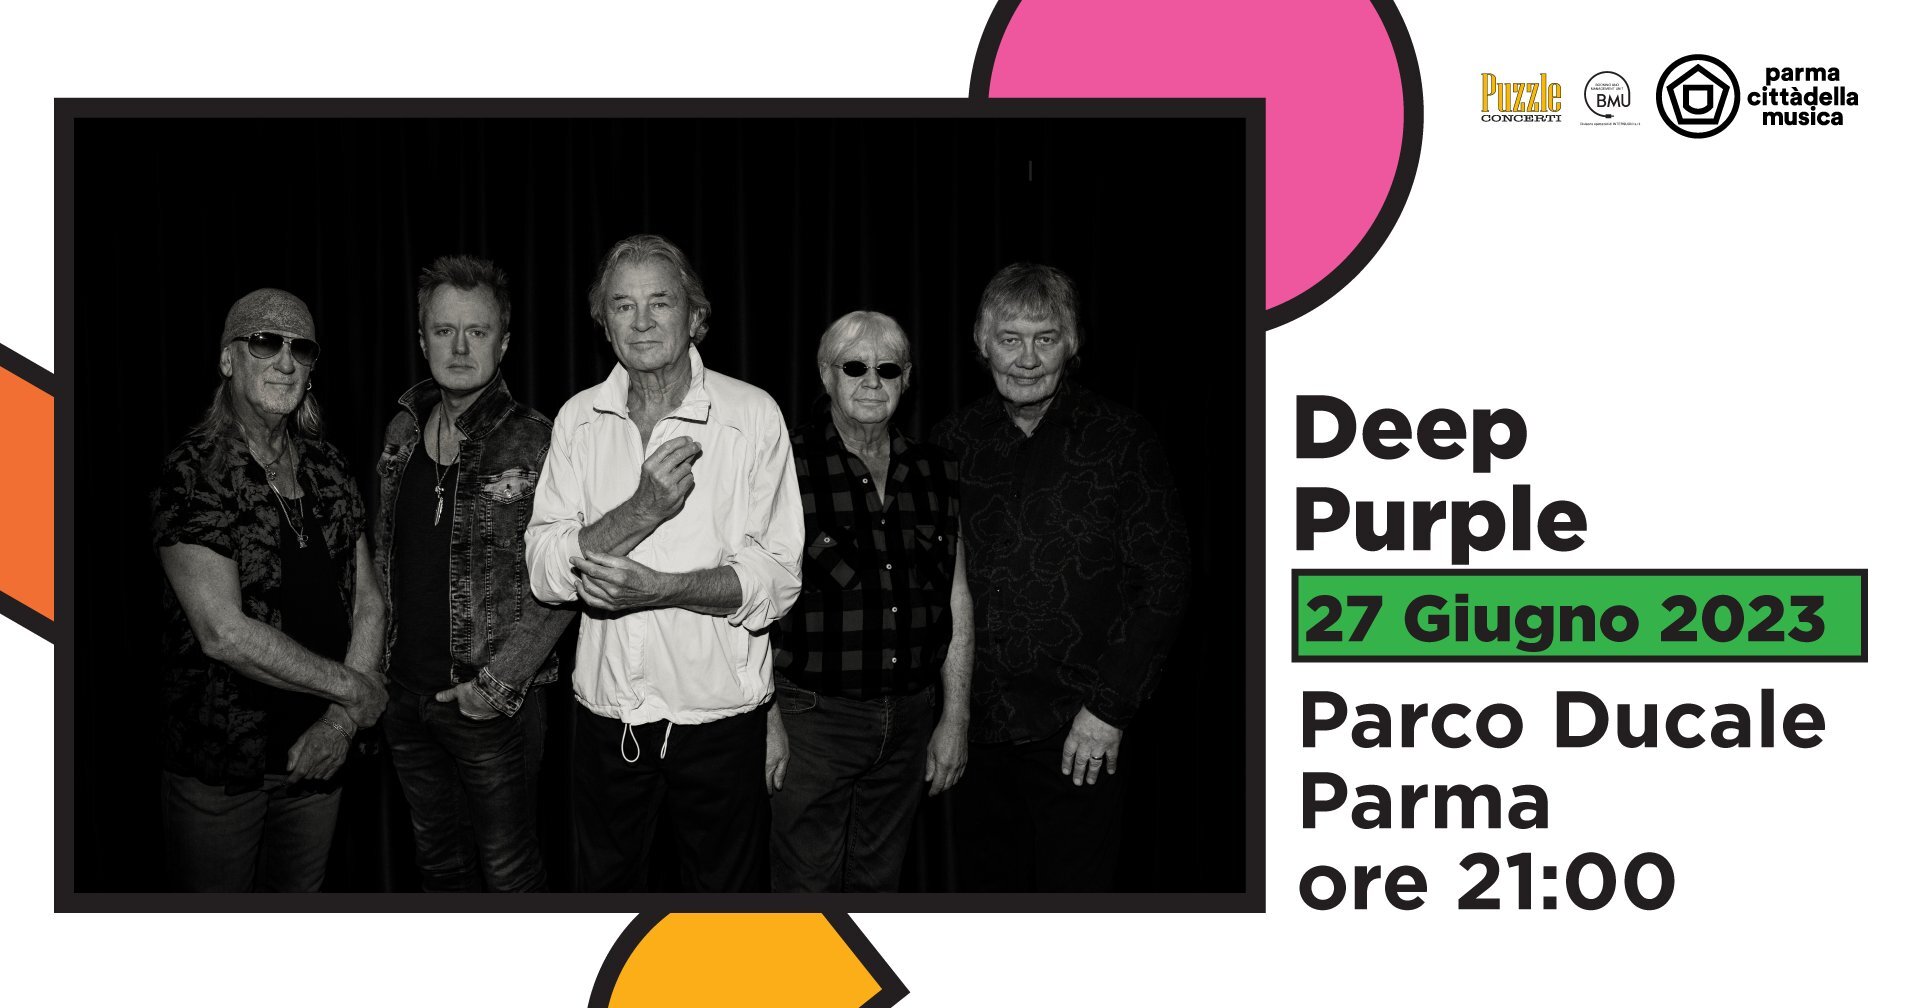 Deep Purple La leggendaria band hard rock suonerà al Parco Ducale per Parma Cittàdella Musica